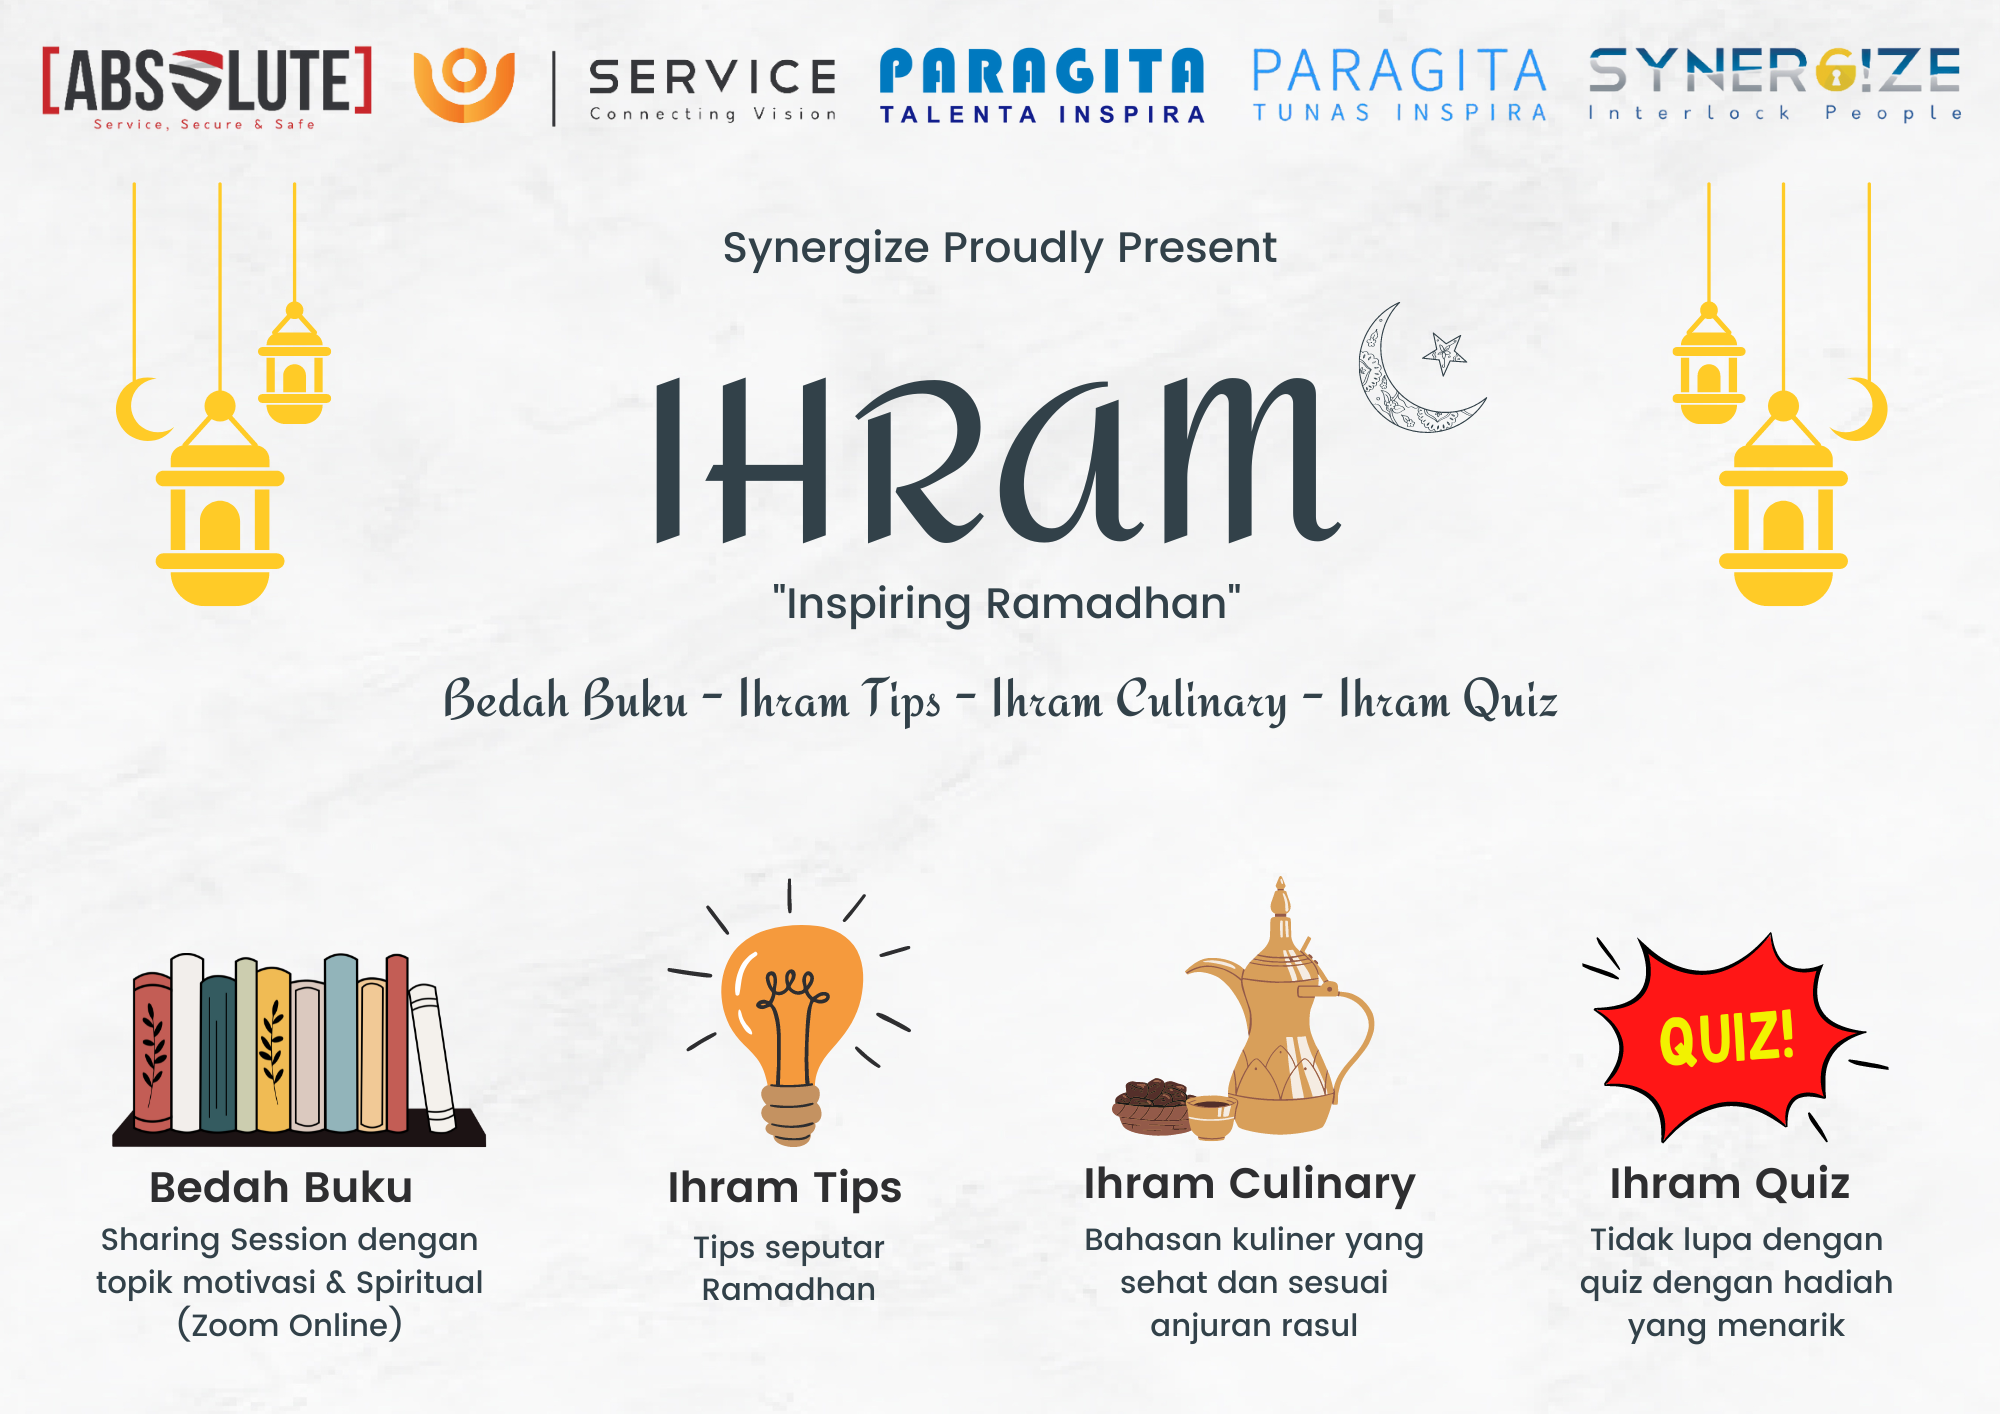 IHRAM (Inspiring Ramadhan)